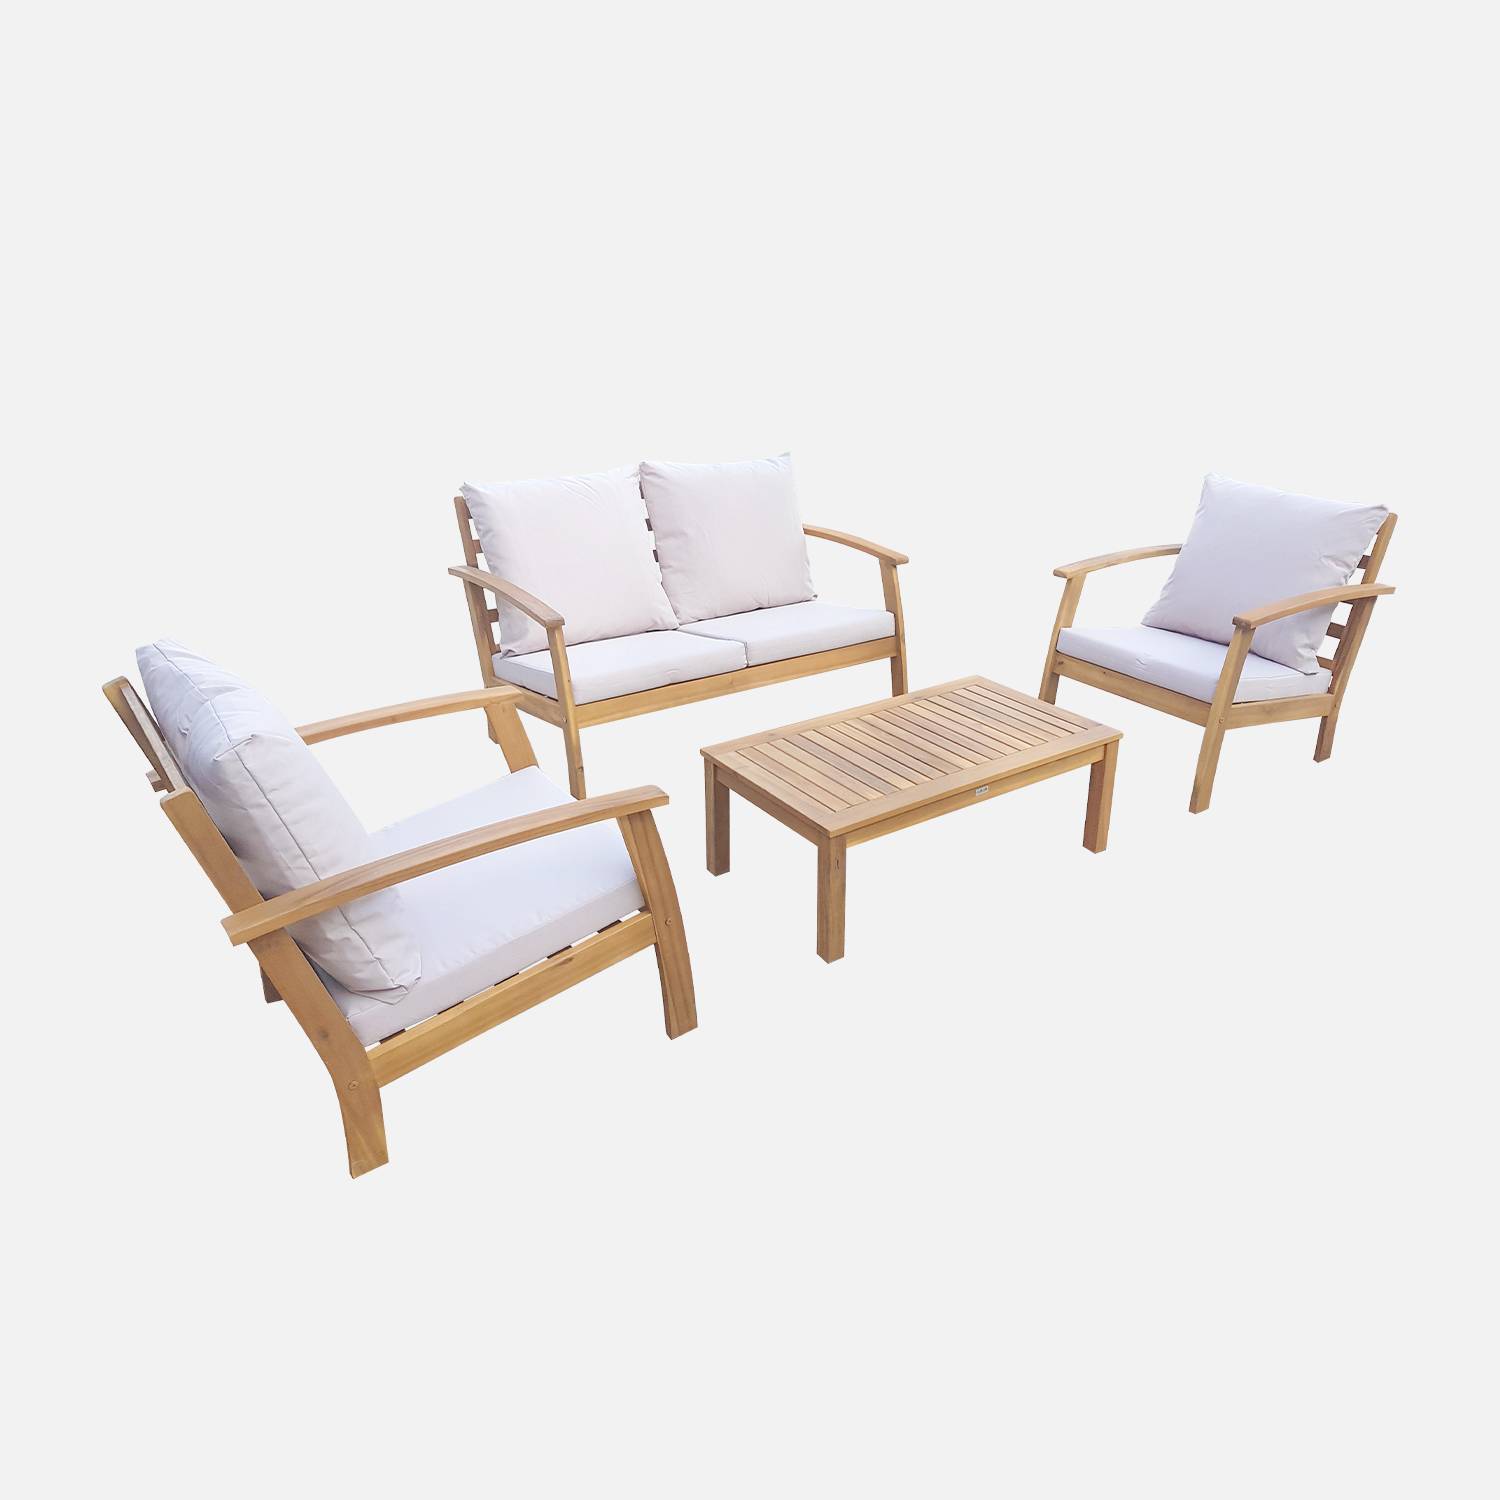 Salon de jardin en bois 4 places - Ushuaïa - Coussins écru, canapé, fauteuils et table basse en acacia, design Photo5